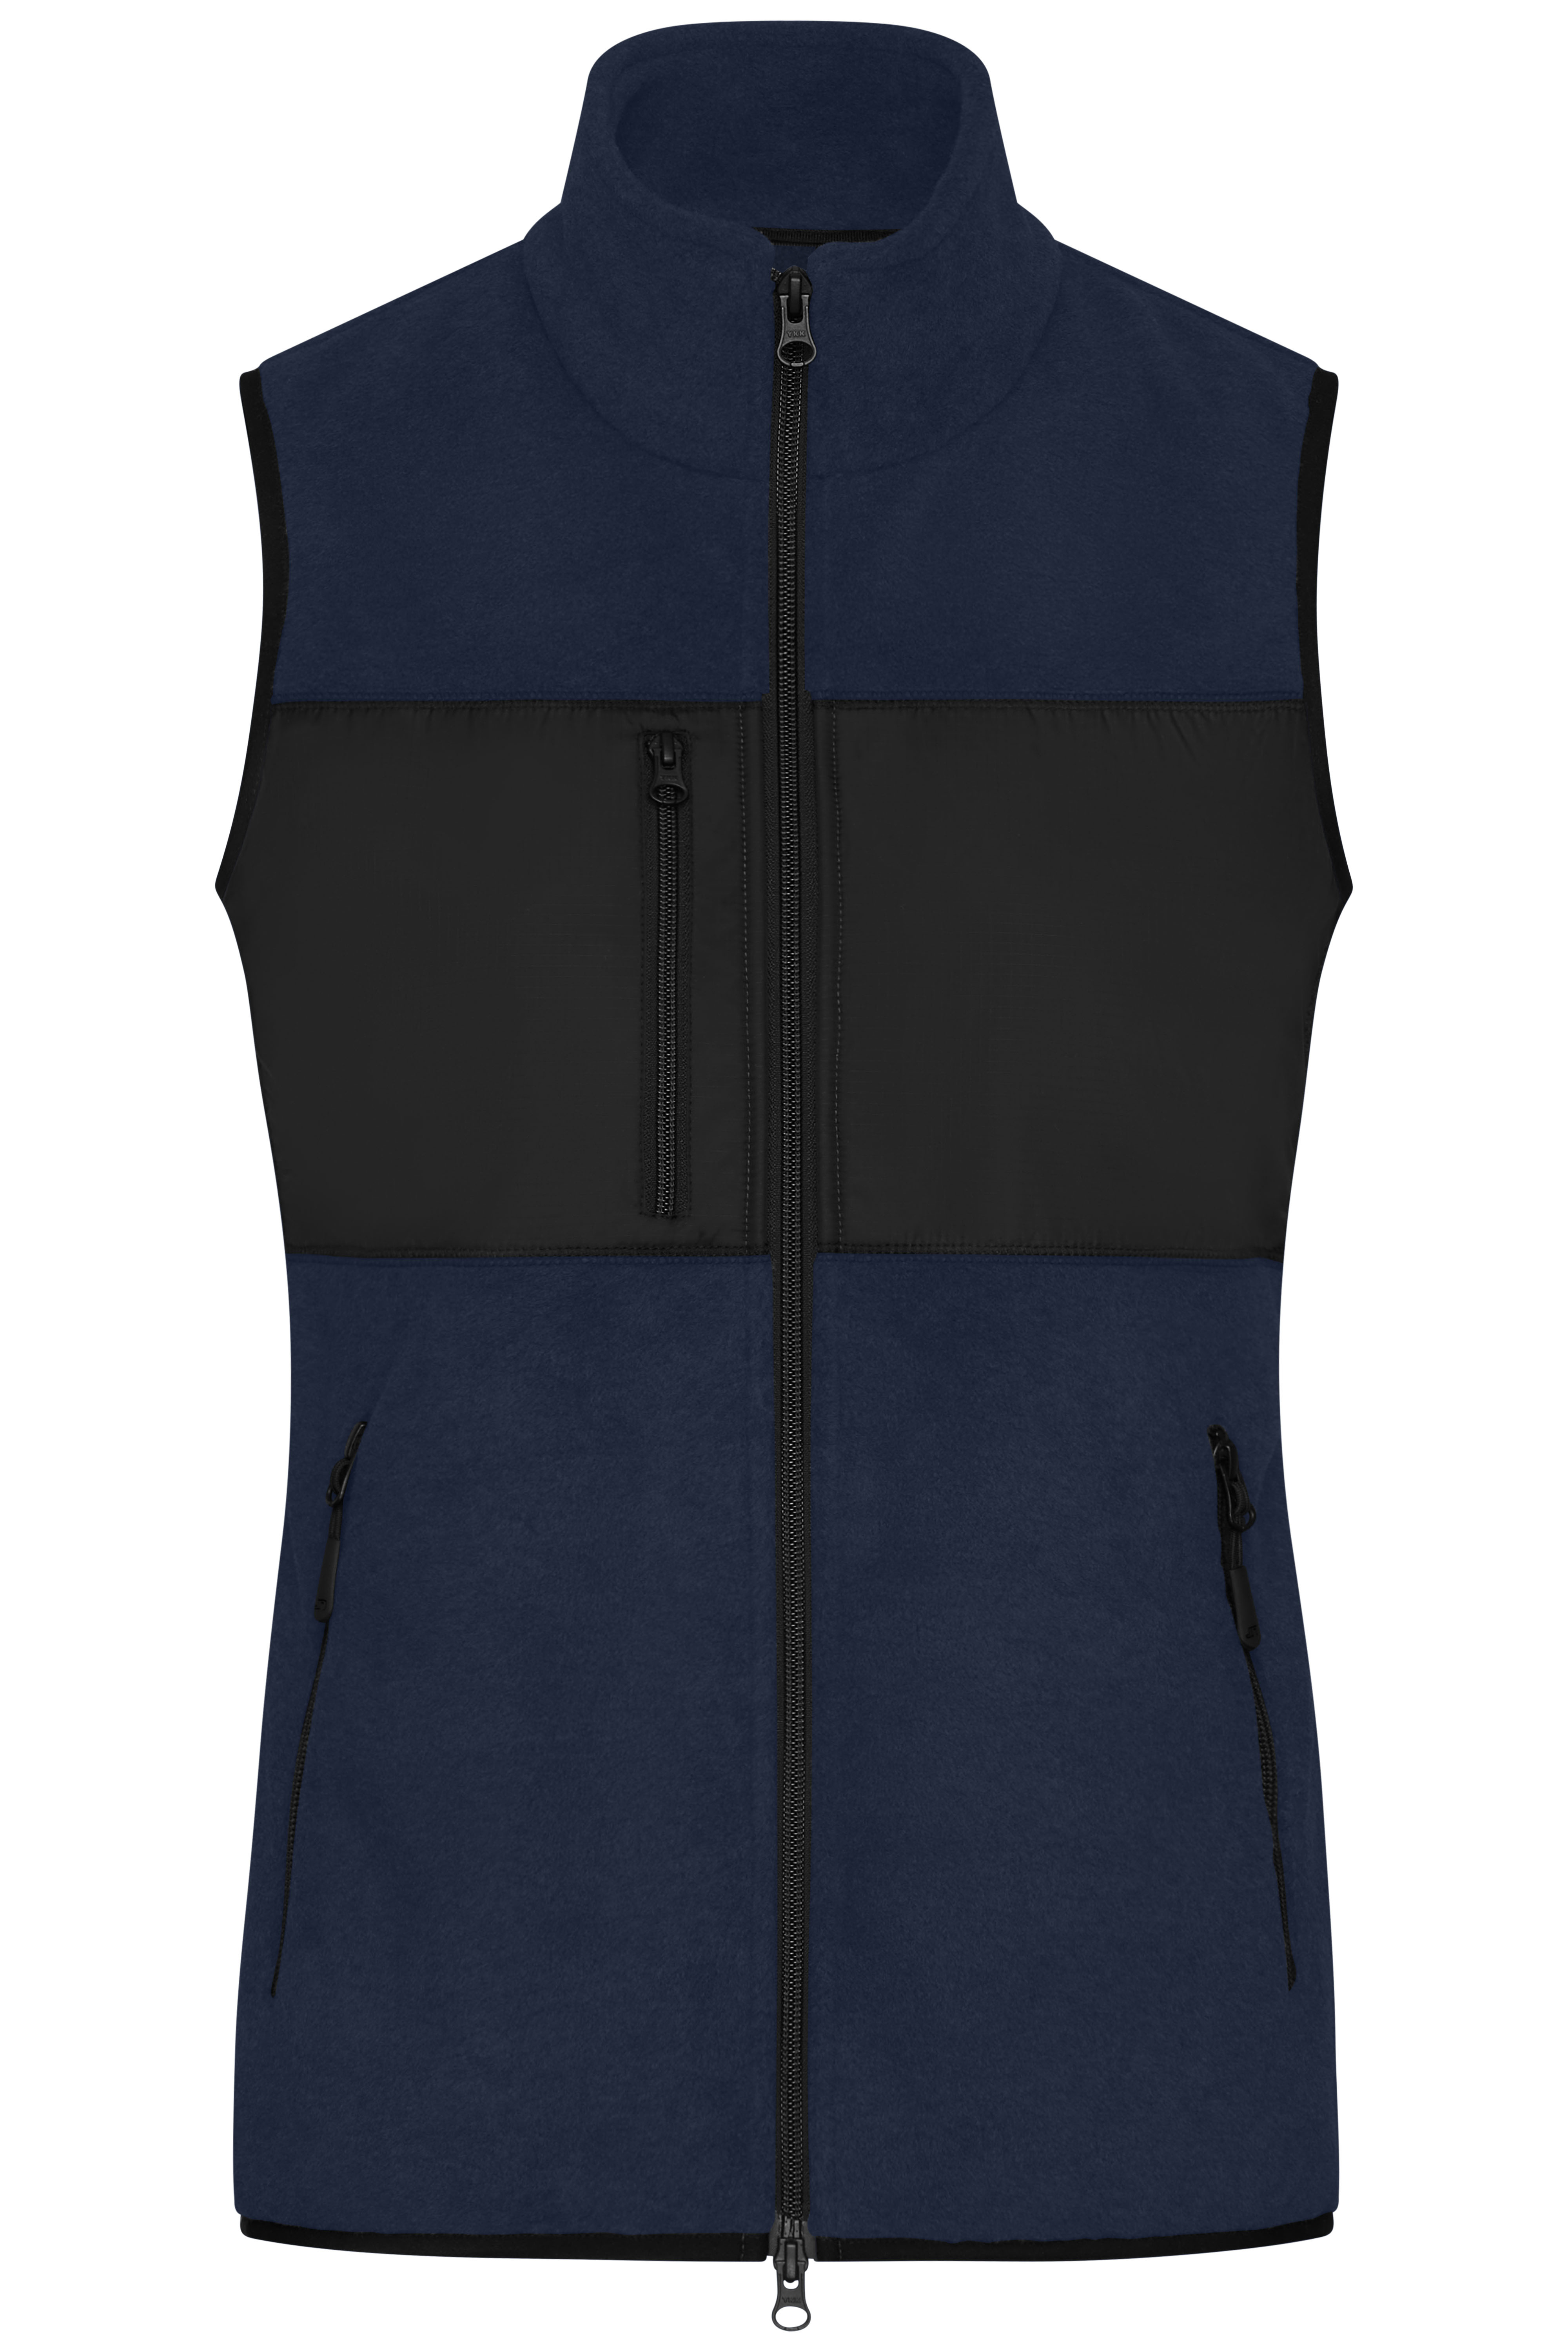 Women's Winter Vest James&Nicholson Ladies´ Fleece Vest